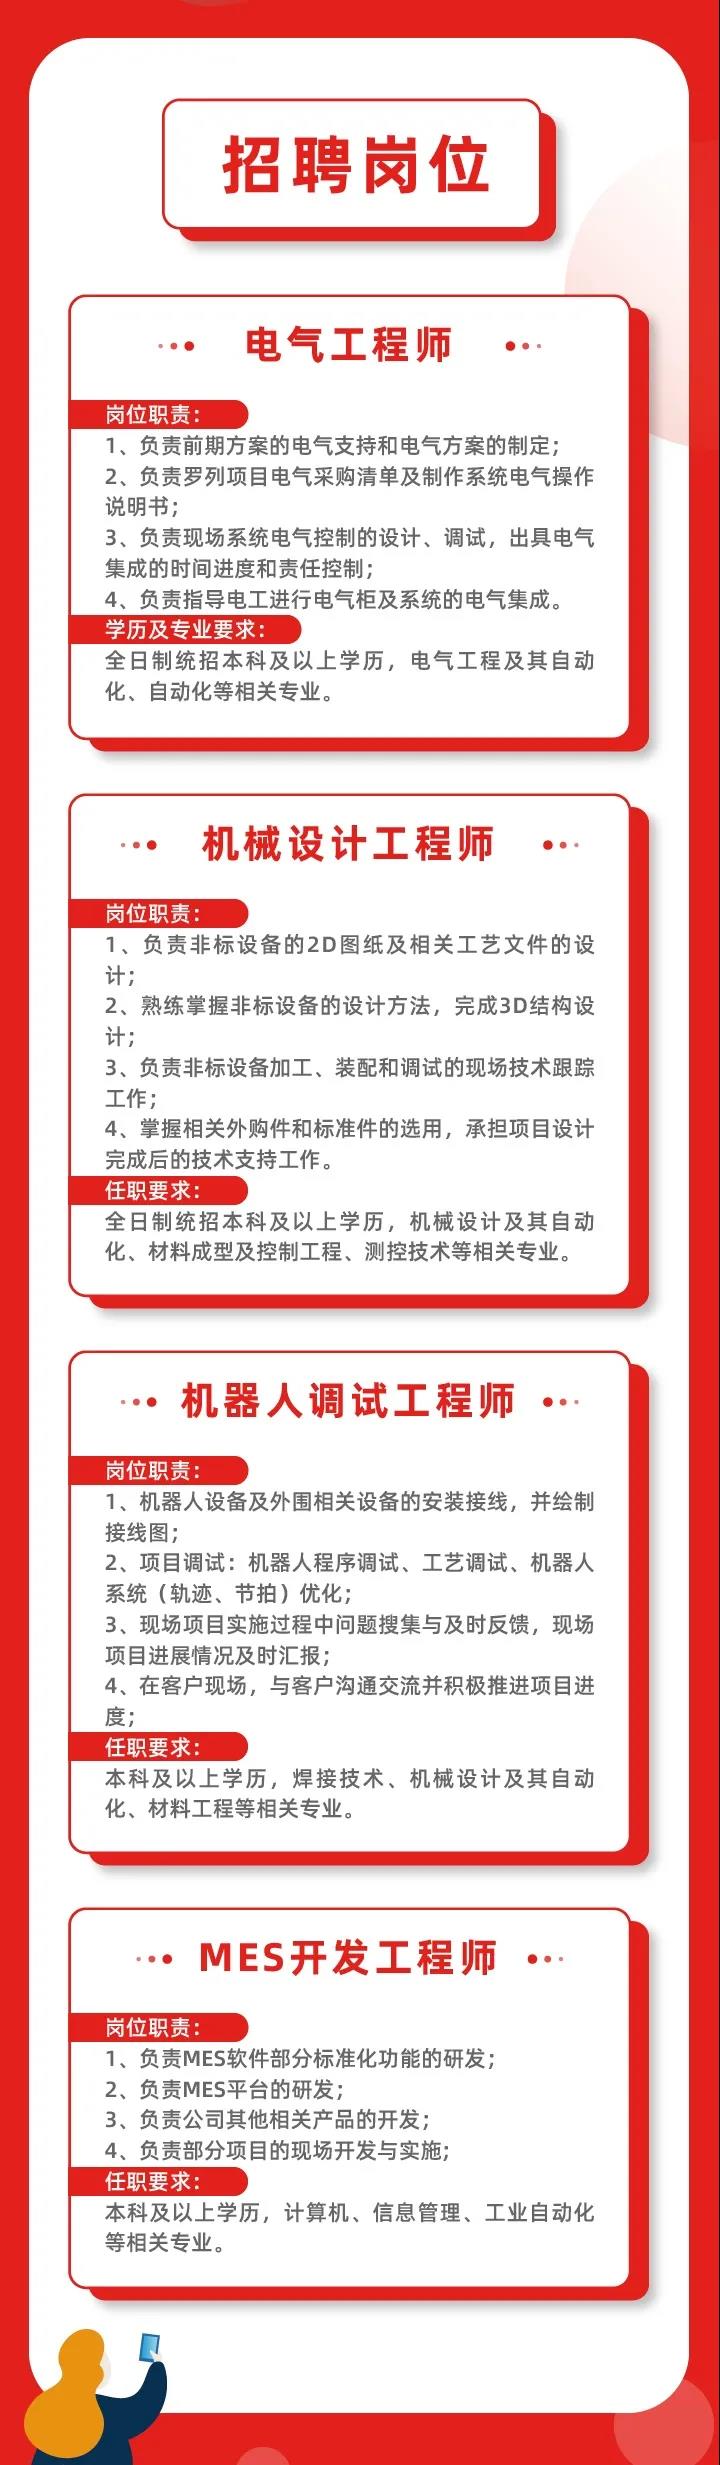 2021 Jiangsu Beiren campus recruitment air announcement strikes!